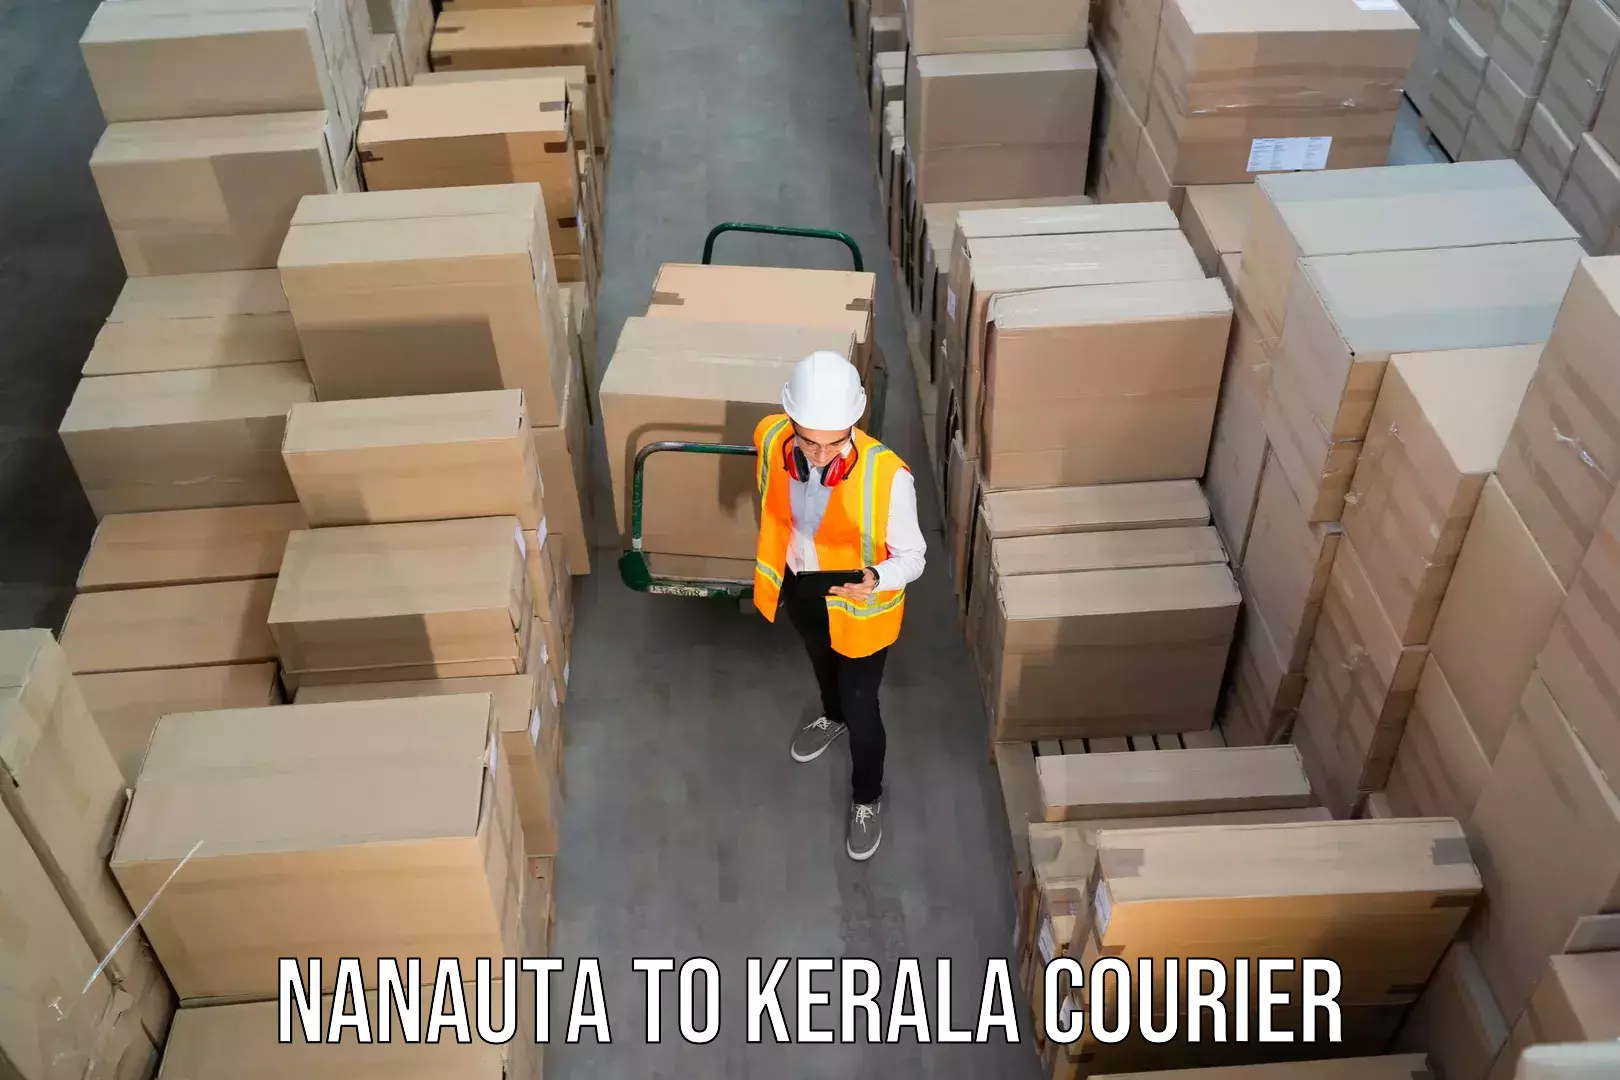 Premium courier solutions in Nanauta to Cochin